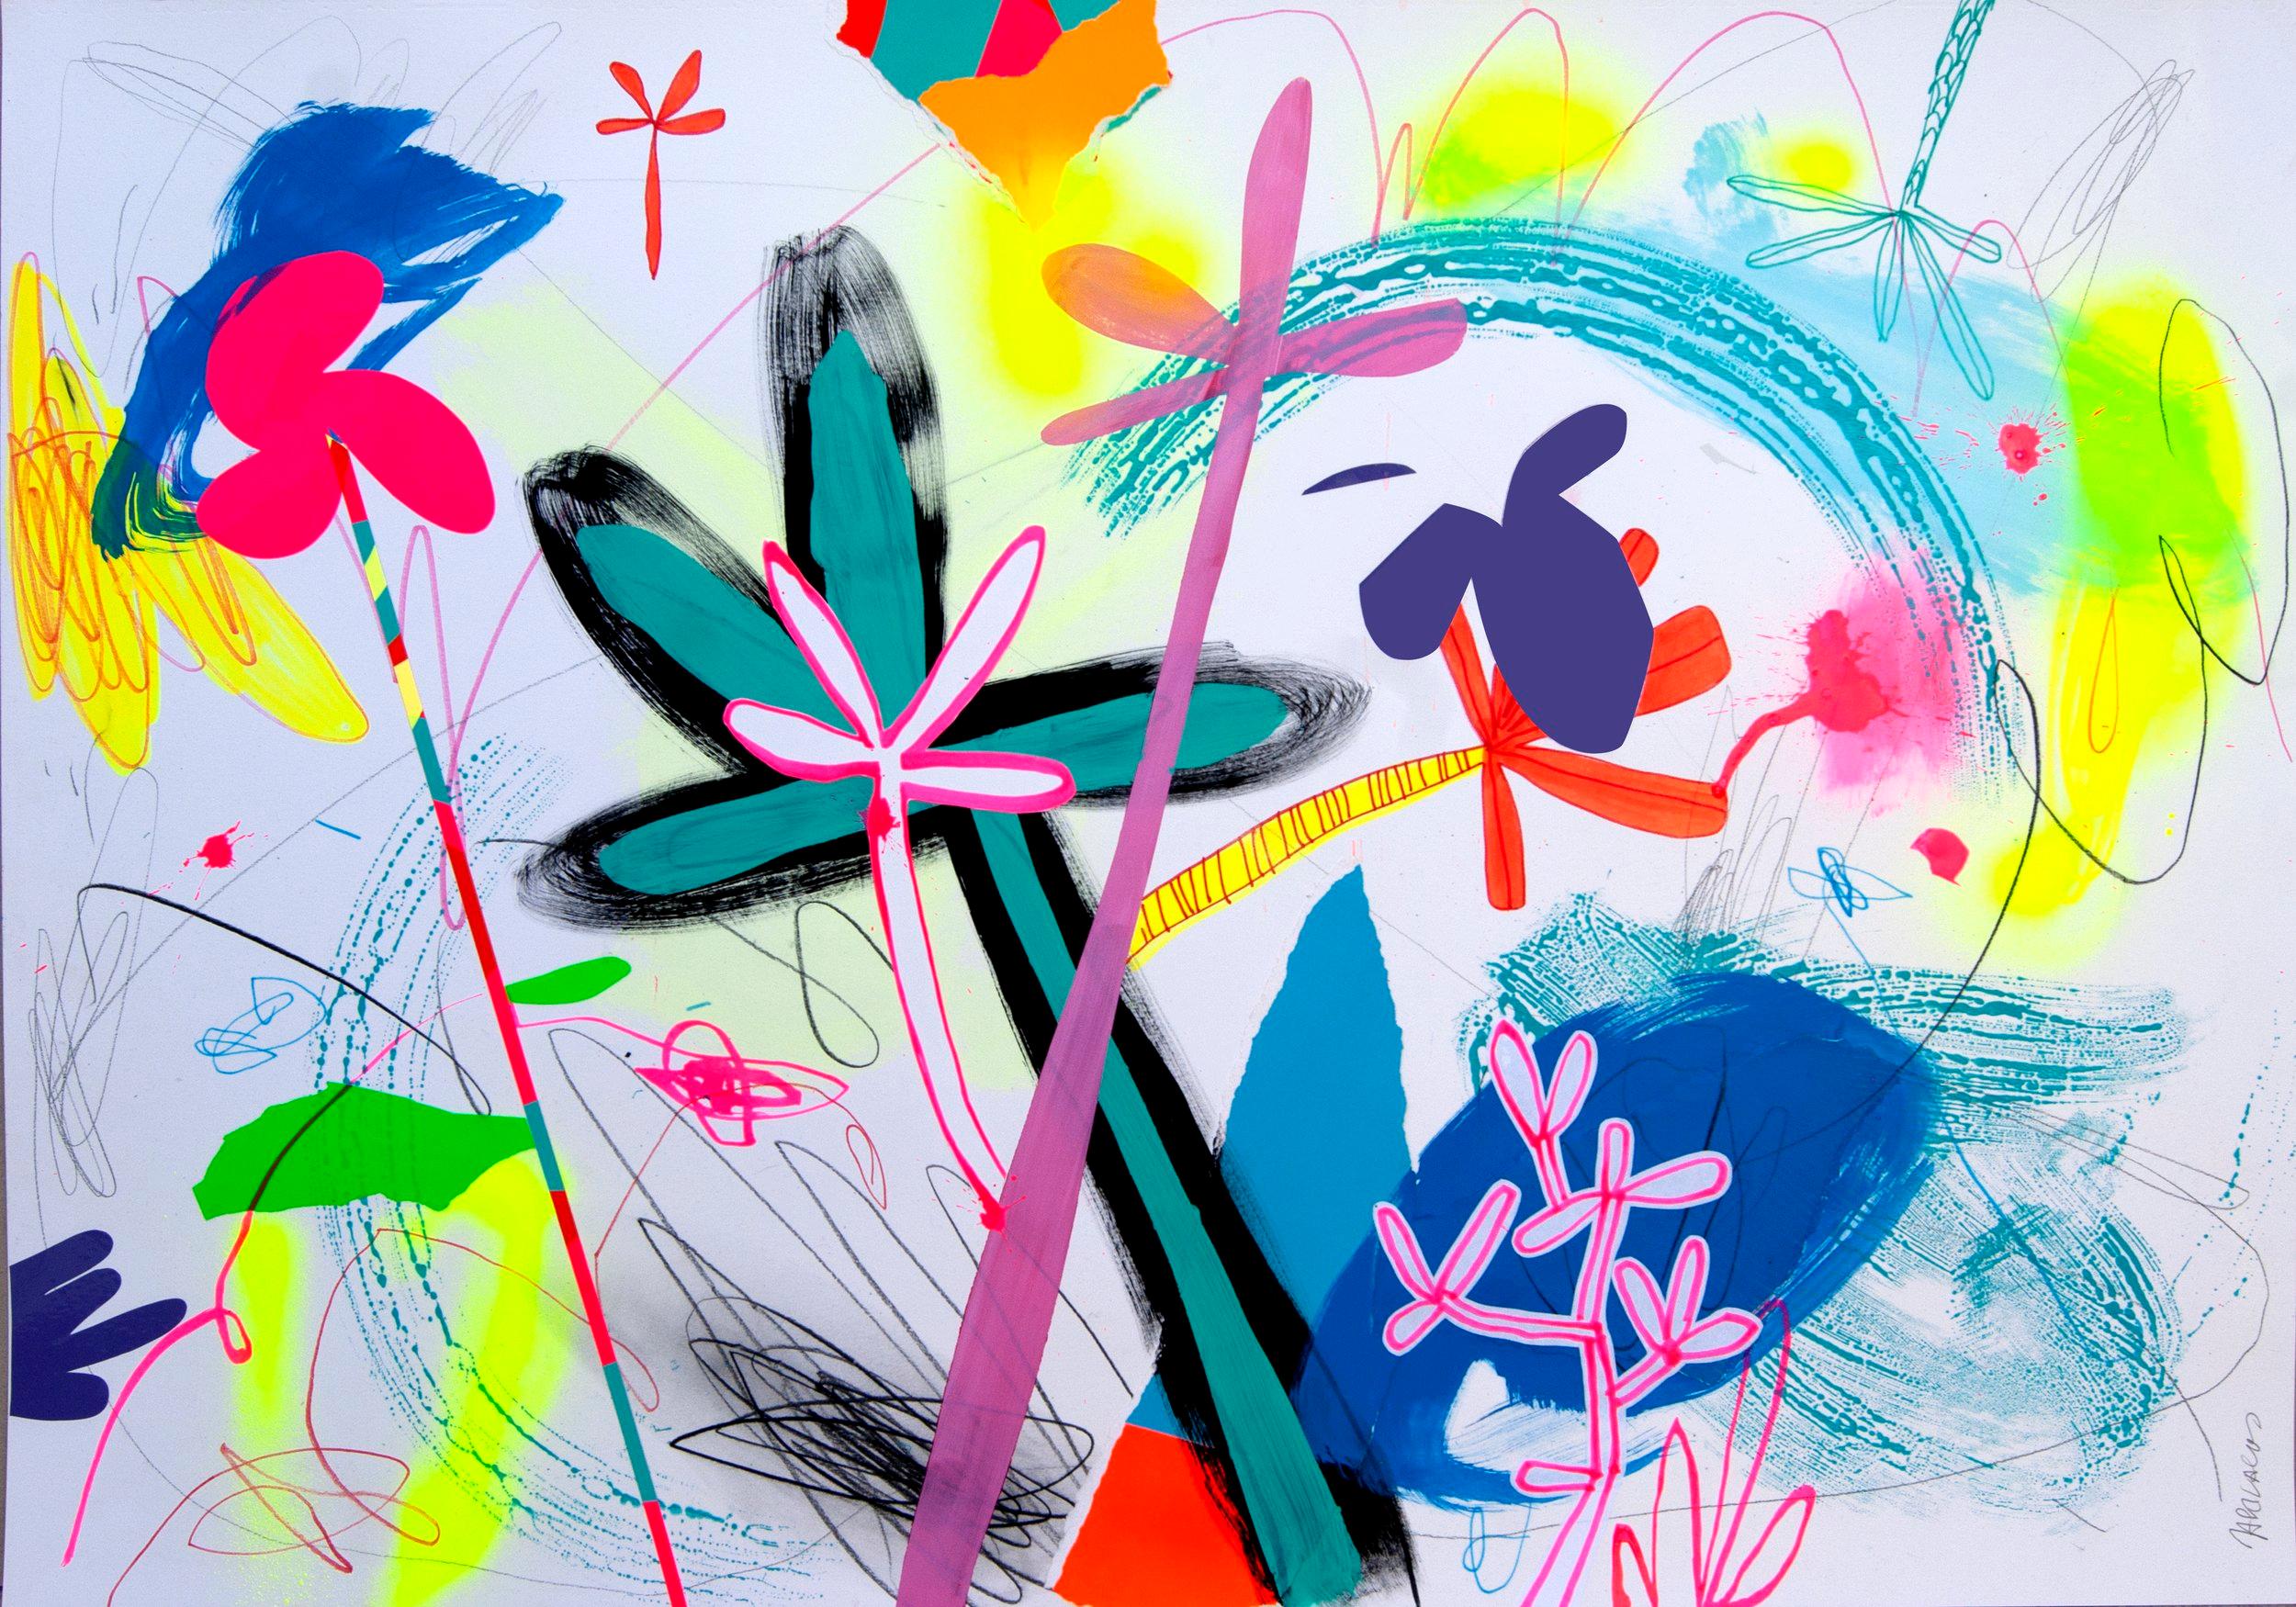 Dans cette œuvre originale en peinture acrylique et vinyle sur papier de la Gallery Art Angler, Jose Palacios dépeint un style pop art abstrait. Il utilise des formes vibrantes roses, blanches, vertes, bleues, noires et rouges pour créer sa